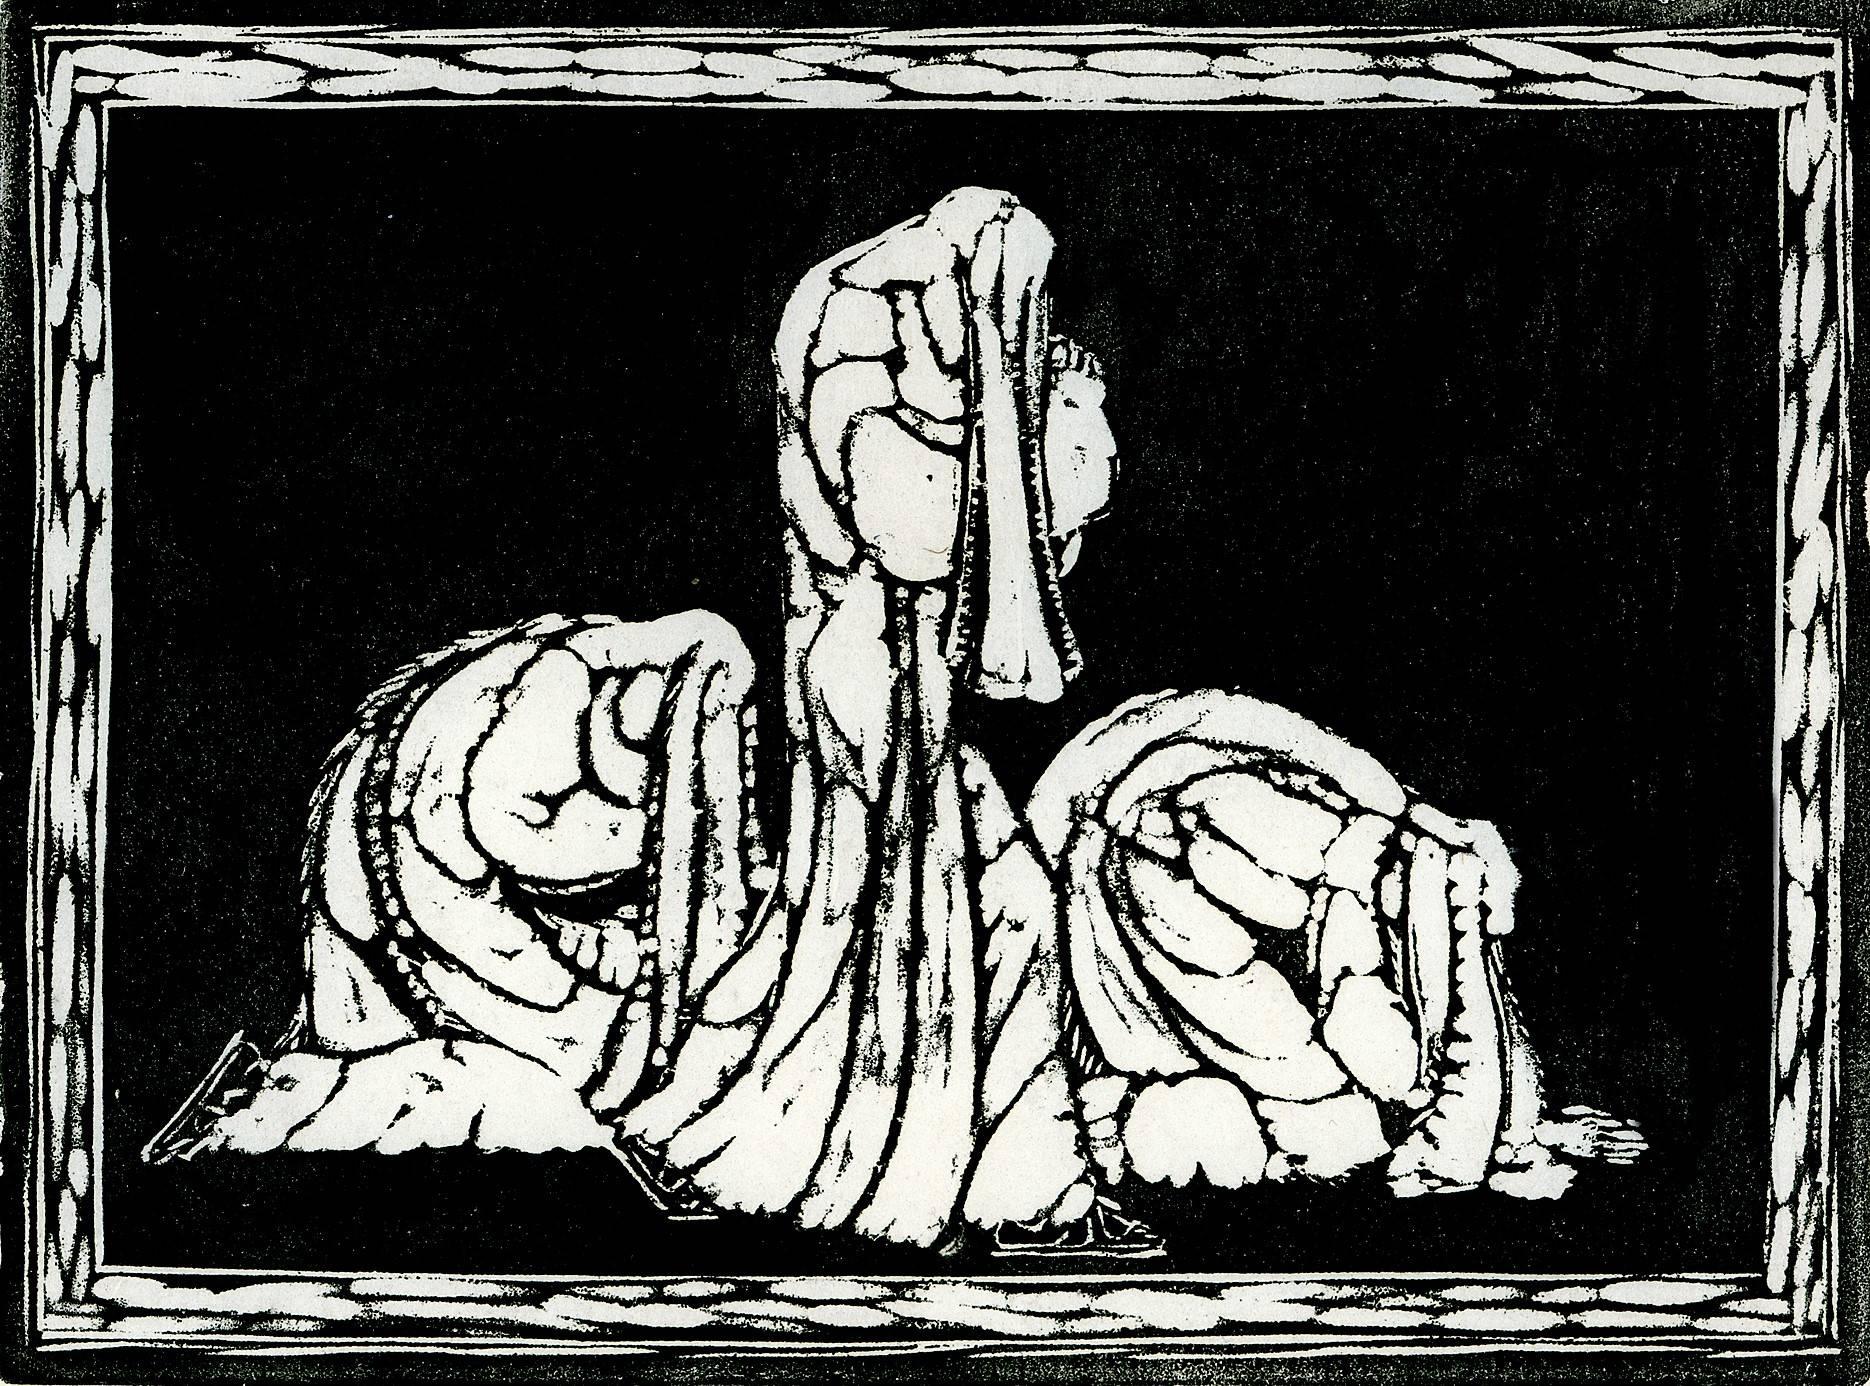 Heinrich Ehmsen Figurative Print - Trauernde. (Mourning)